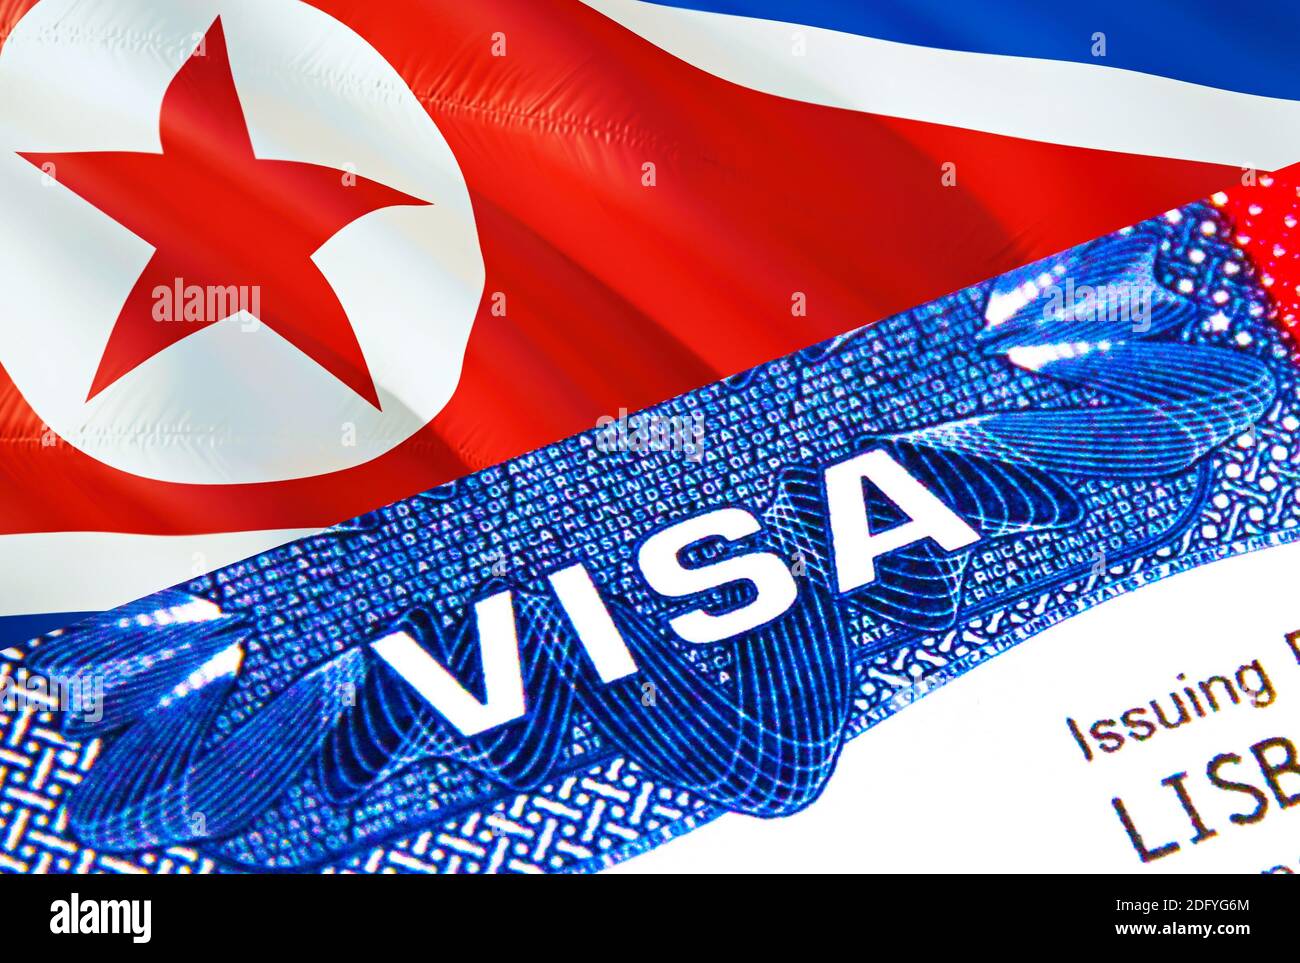 Corée du Nord Visa en passeport. Visa d'immigration des États-Unis pour les  citoyens de la Corée du Nord se concentrant sur le mot VISA. Voyager en  Corée du Nord visa dans l'identification